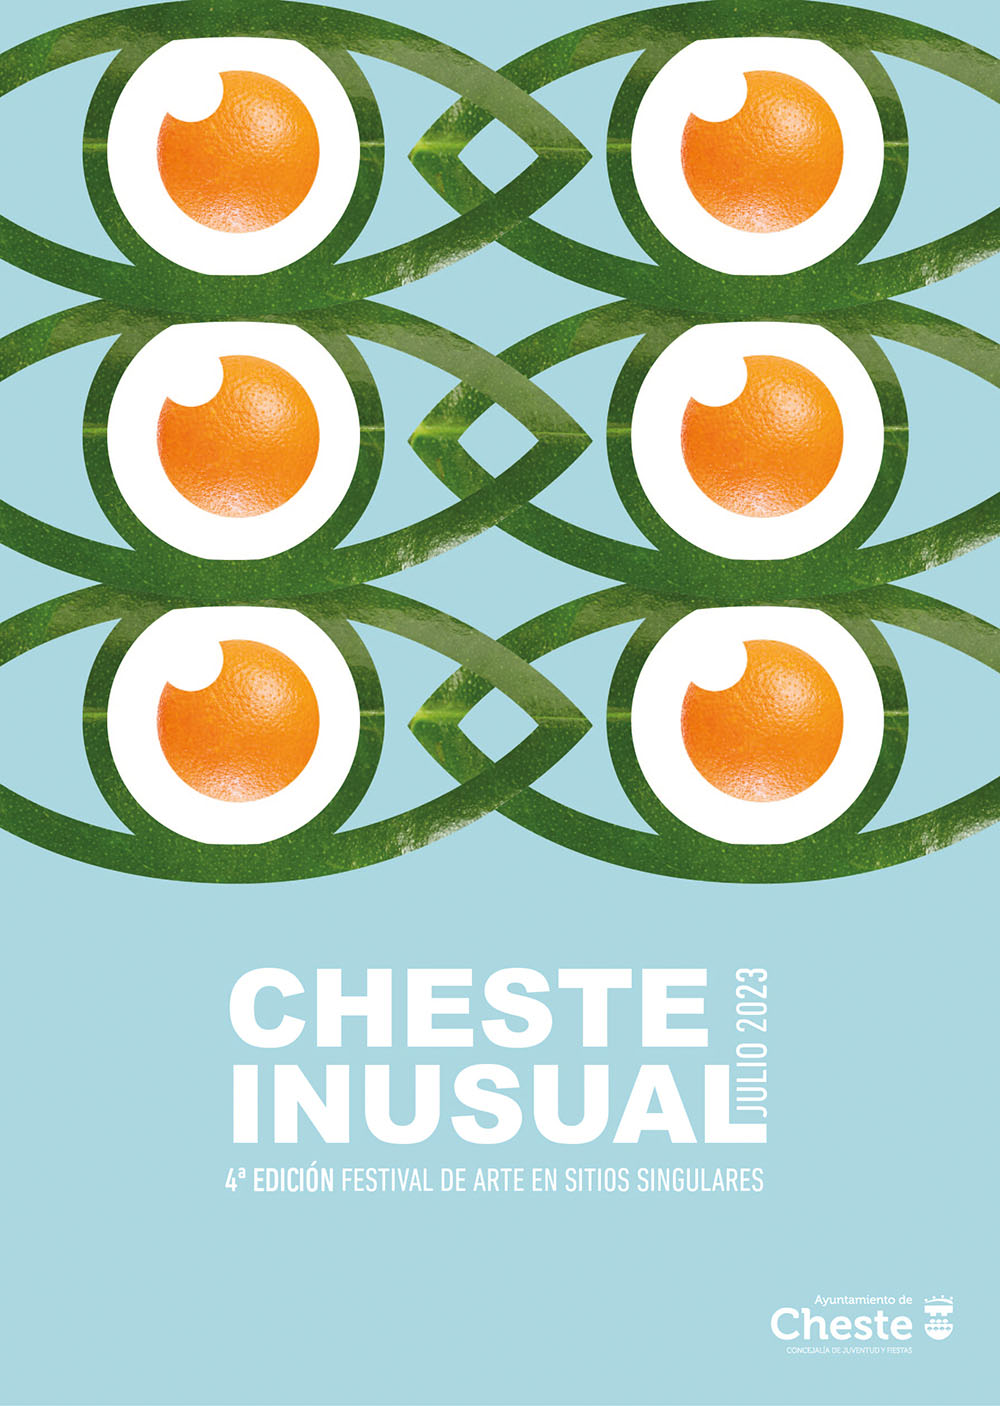 Cheste Inusual regresa con su 4ª edición